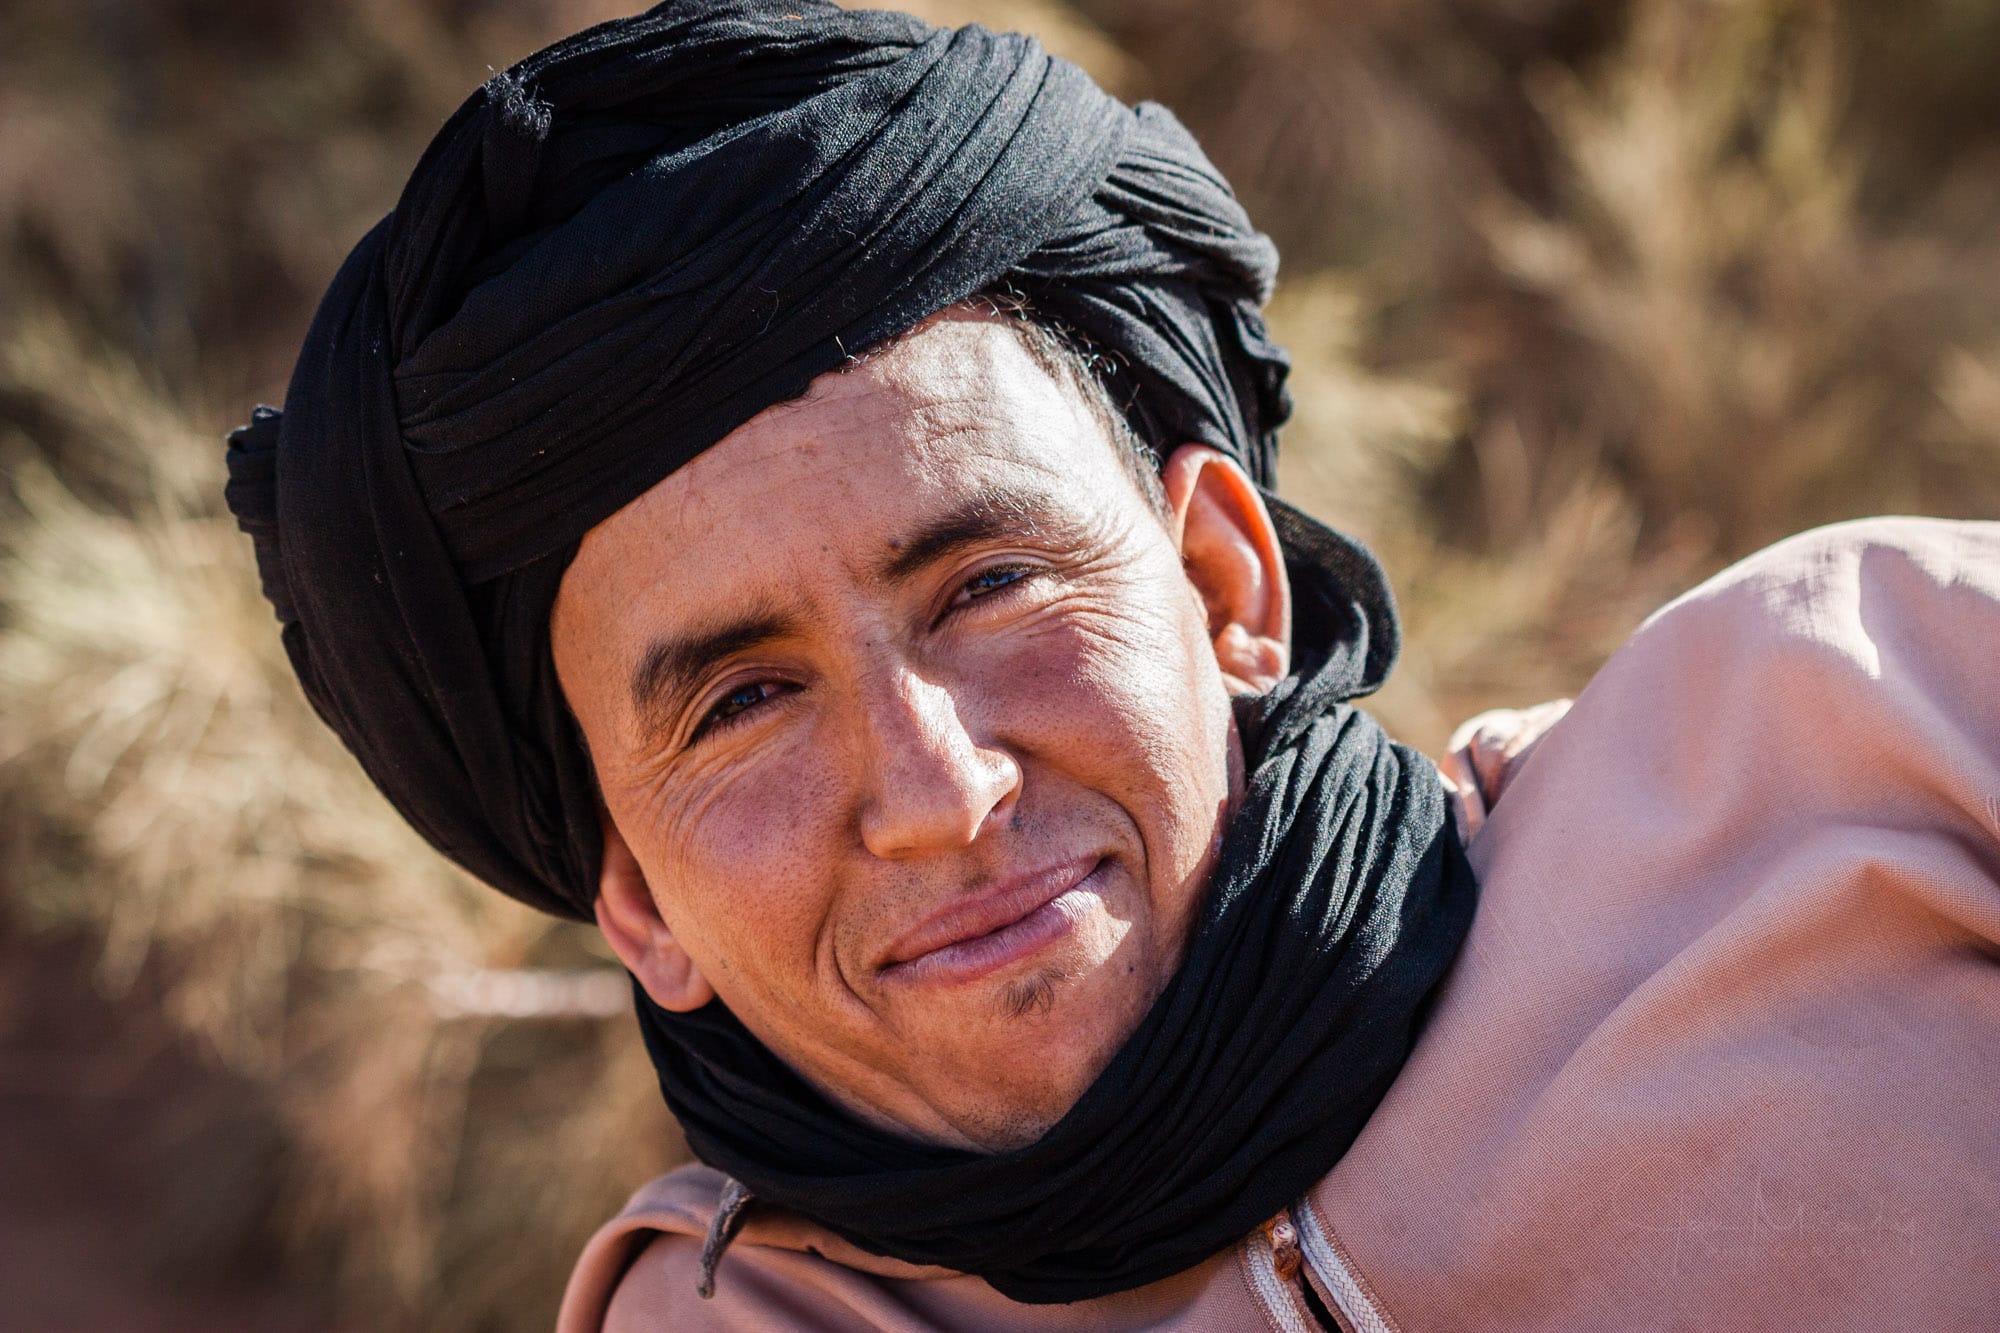 Berber Mohammed